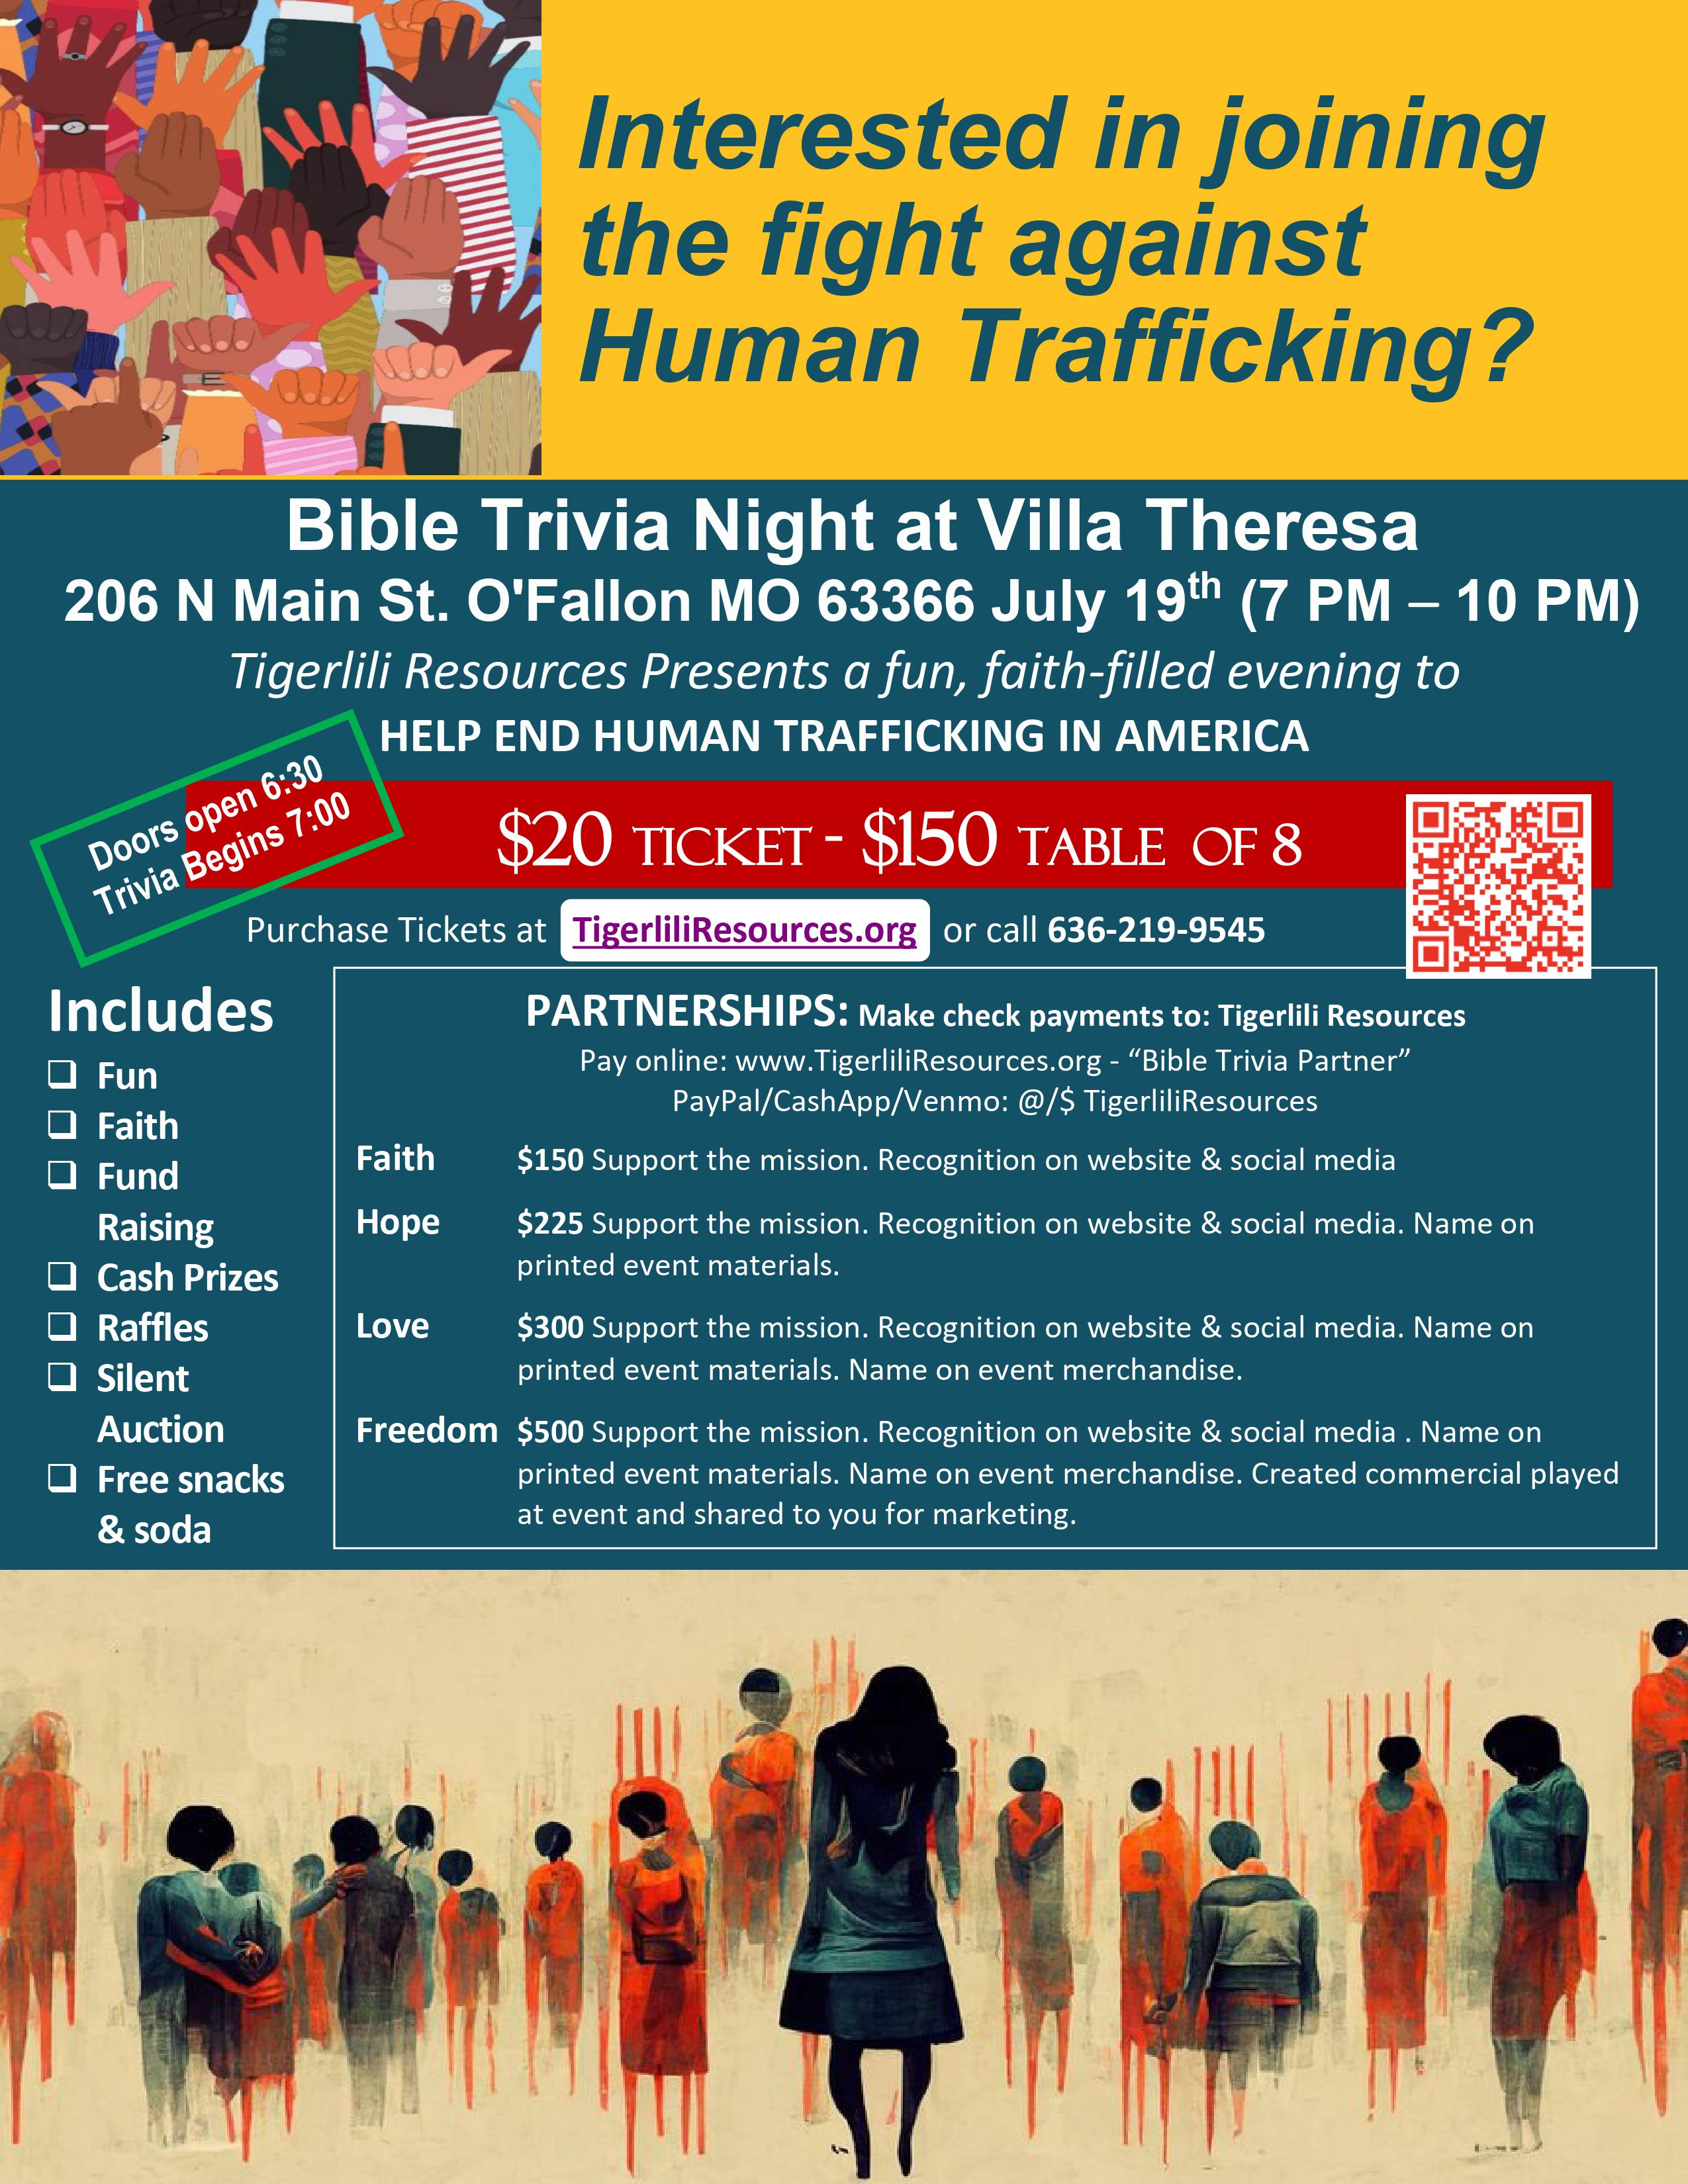 Bible Trivia Night at Villa Theresa July 19 at 7 pm